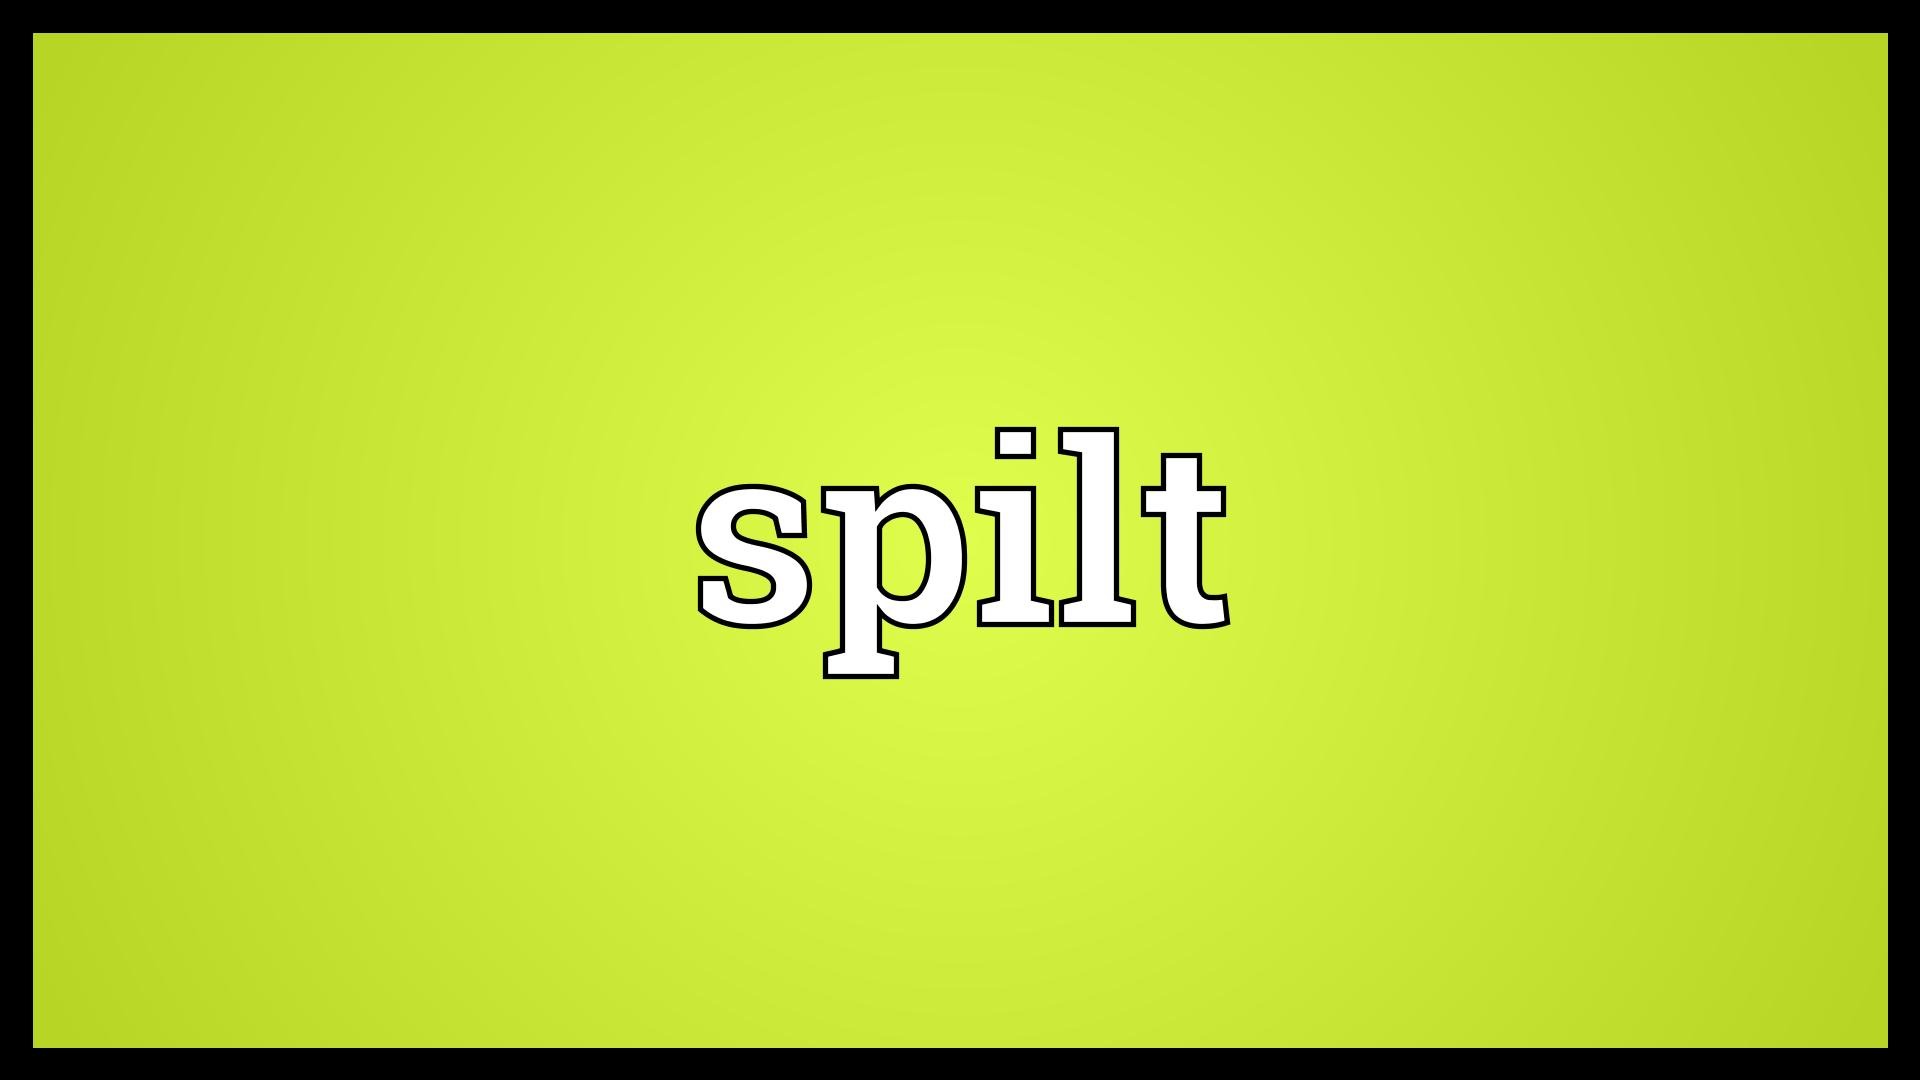 Spilt Meaning - YouTube